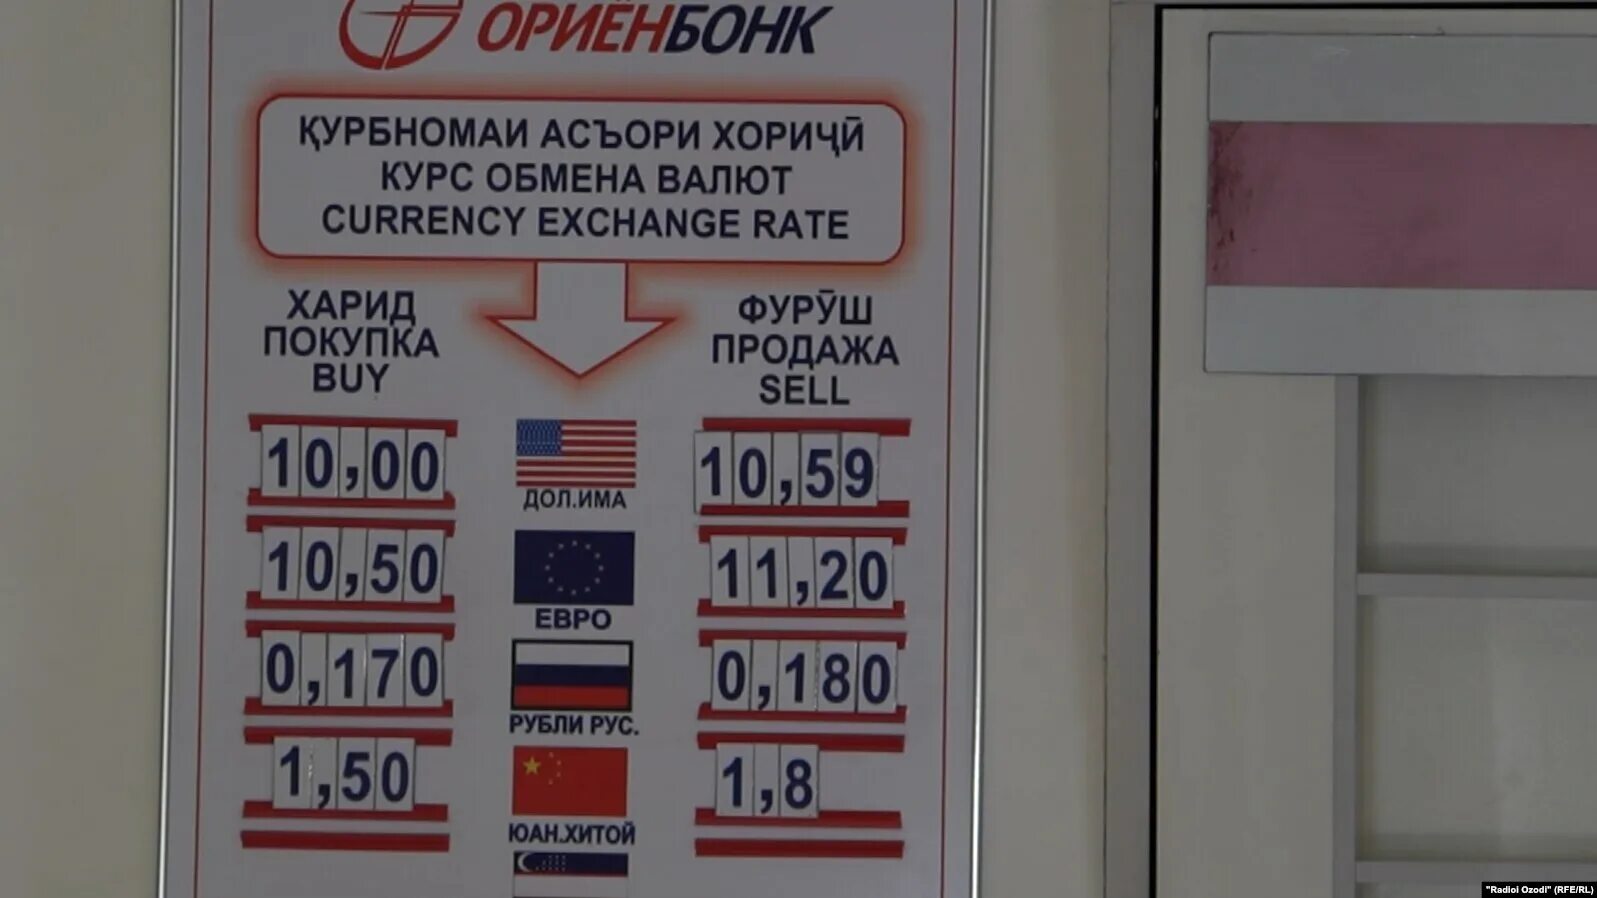 Валюта таджикистан рубль. Курсы валют в Таджикистане. Курс доллара в Таджикистане. Курс валют в Таджикистане. Доллар Таджикистан курс 1000.